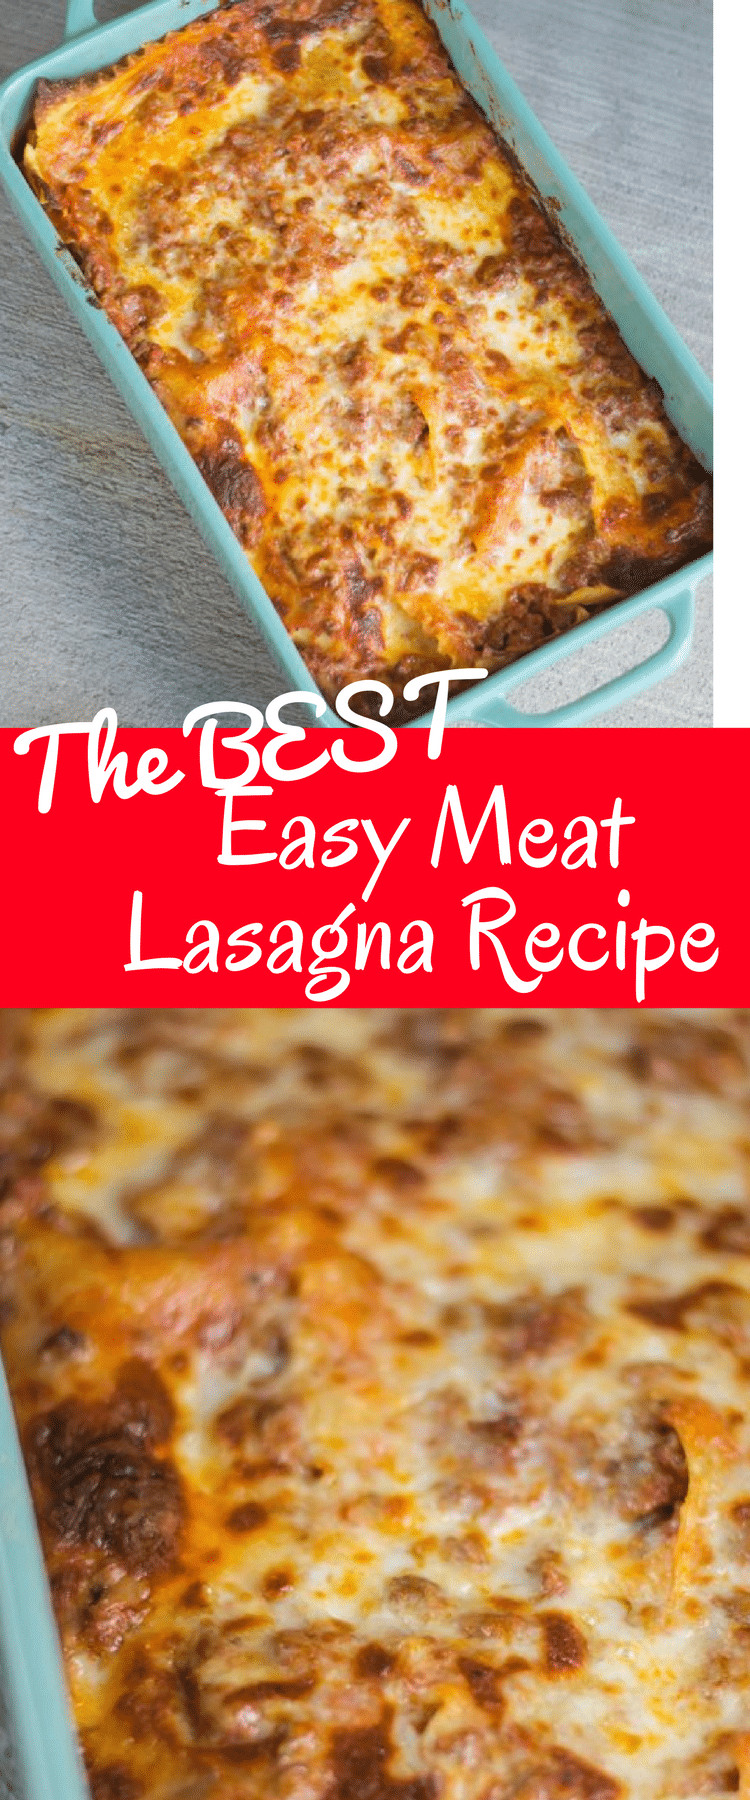 Quick Lasagna Recipe
 The BEST Easy Lasagna Recipe